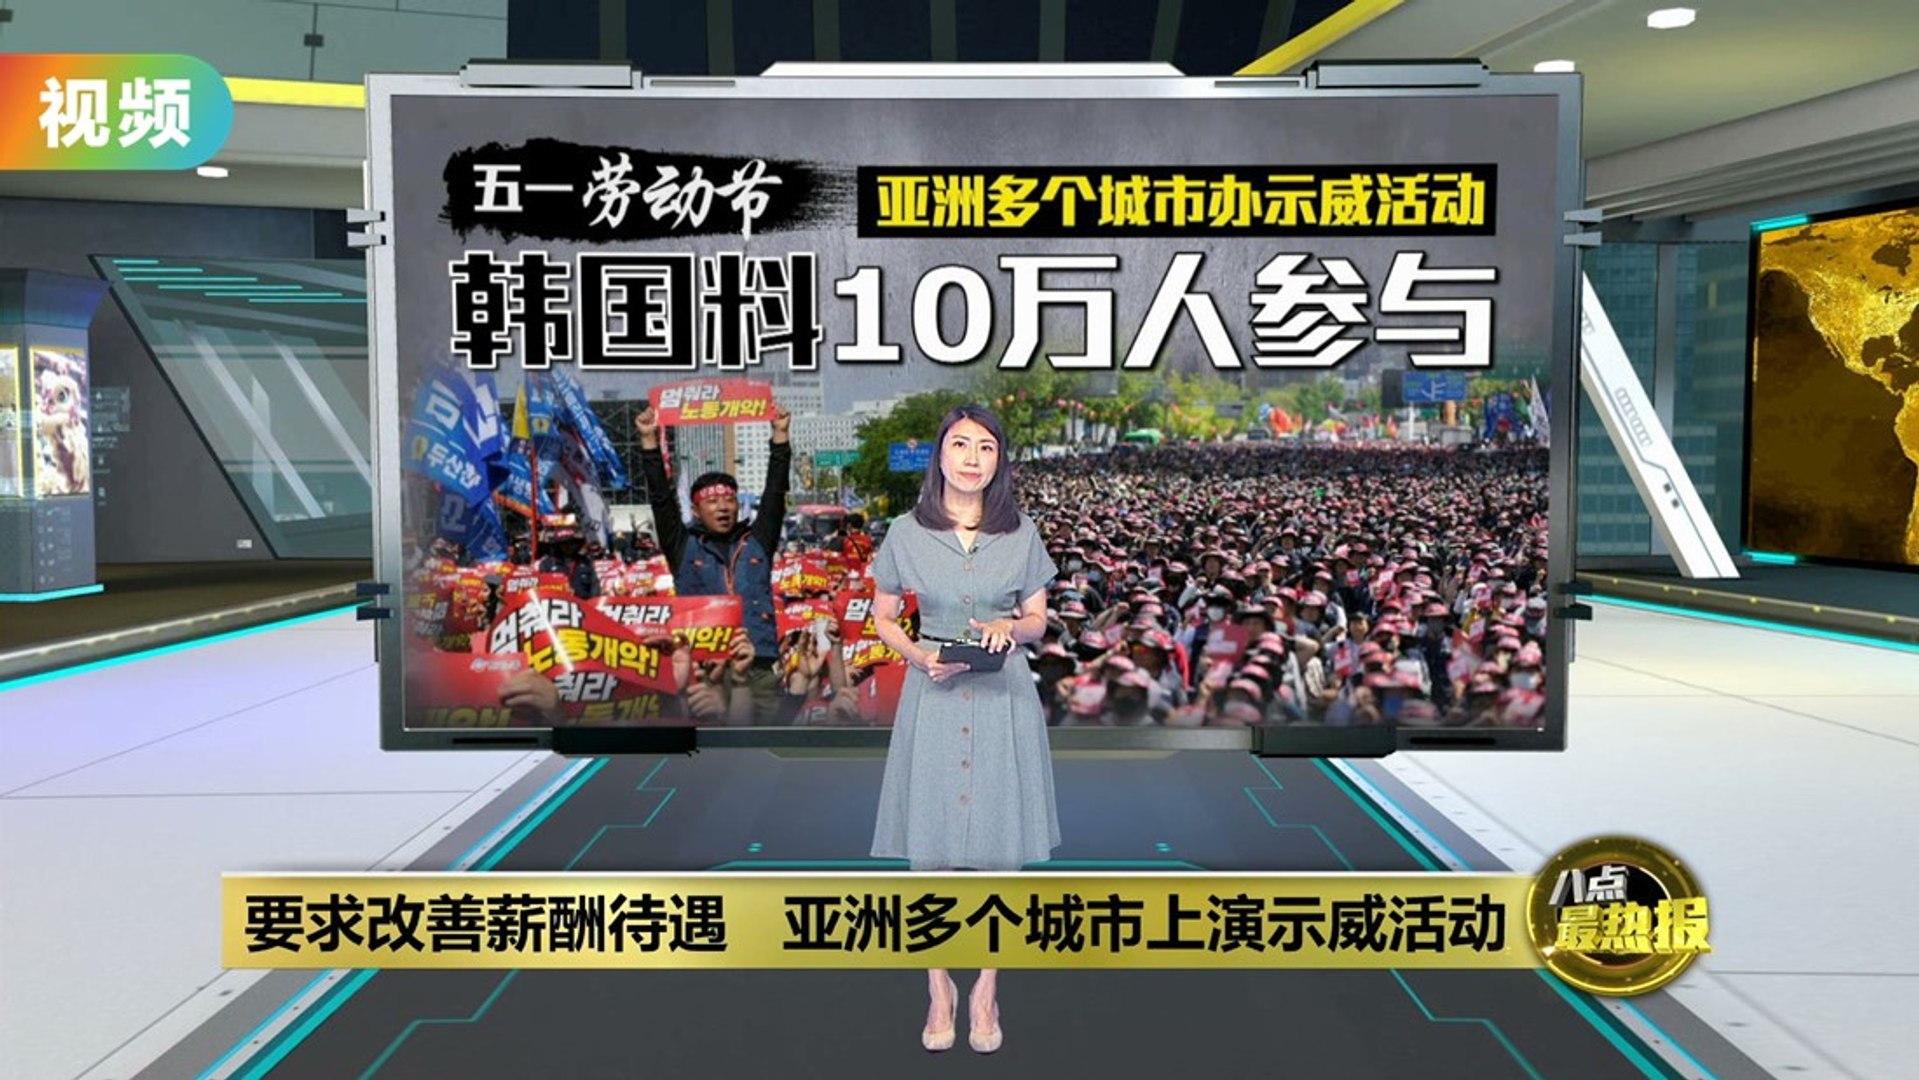 亚洲多个城市上演示威活动趁劳动节要求改善薪酬待遇- video Dailymotion image